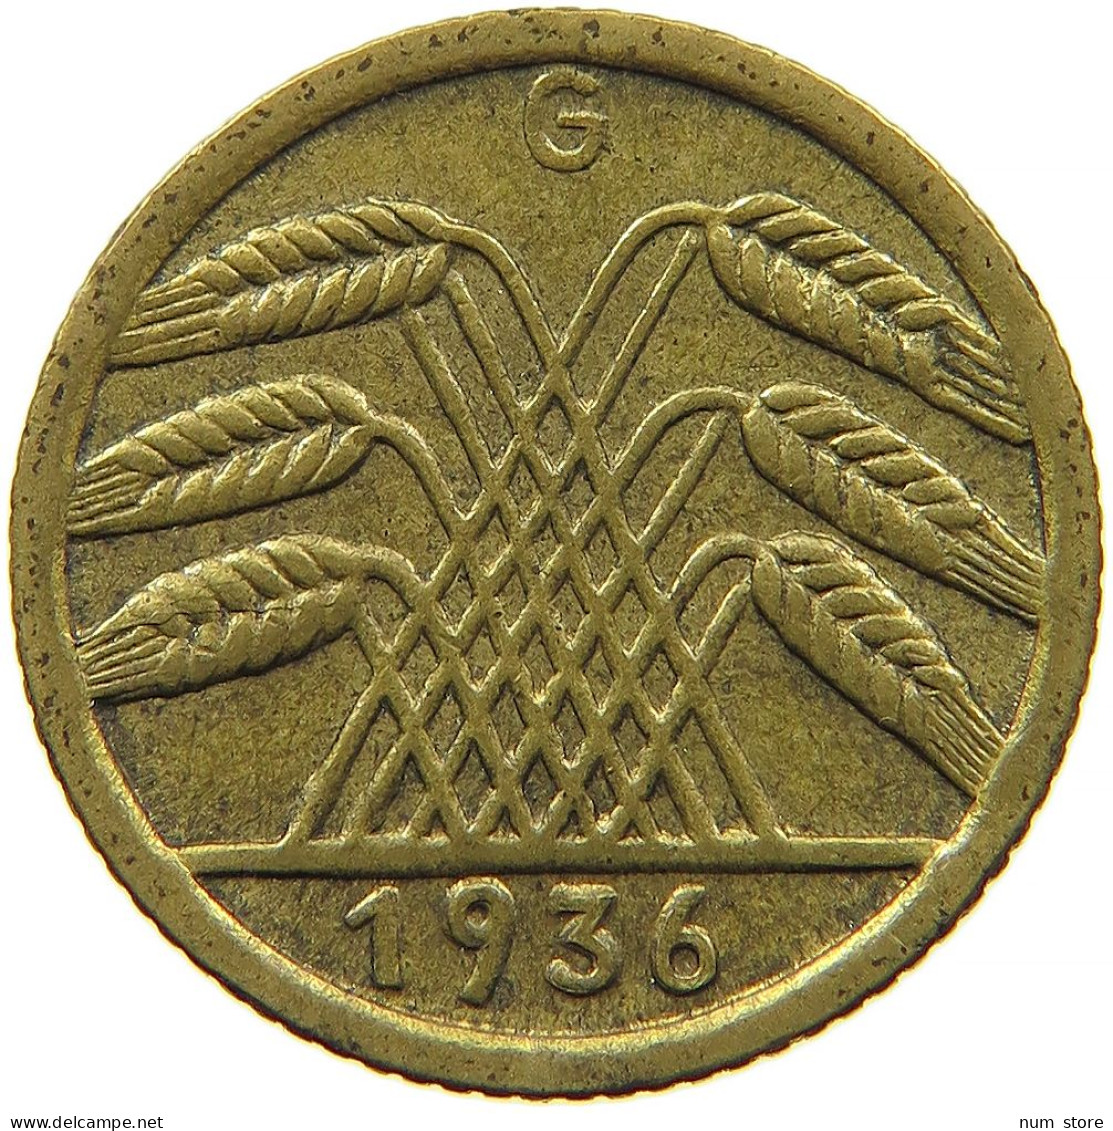 GERMANY 5 REICHSPFENNIG 1936 G #s088 0501 - 5 Reichspfennig